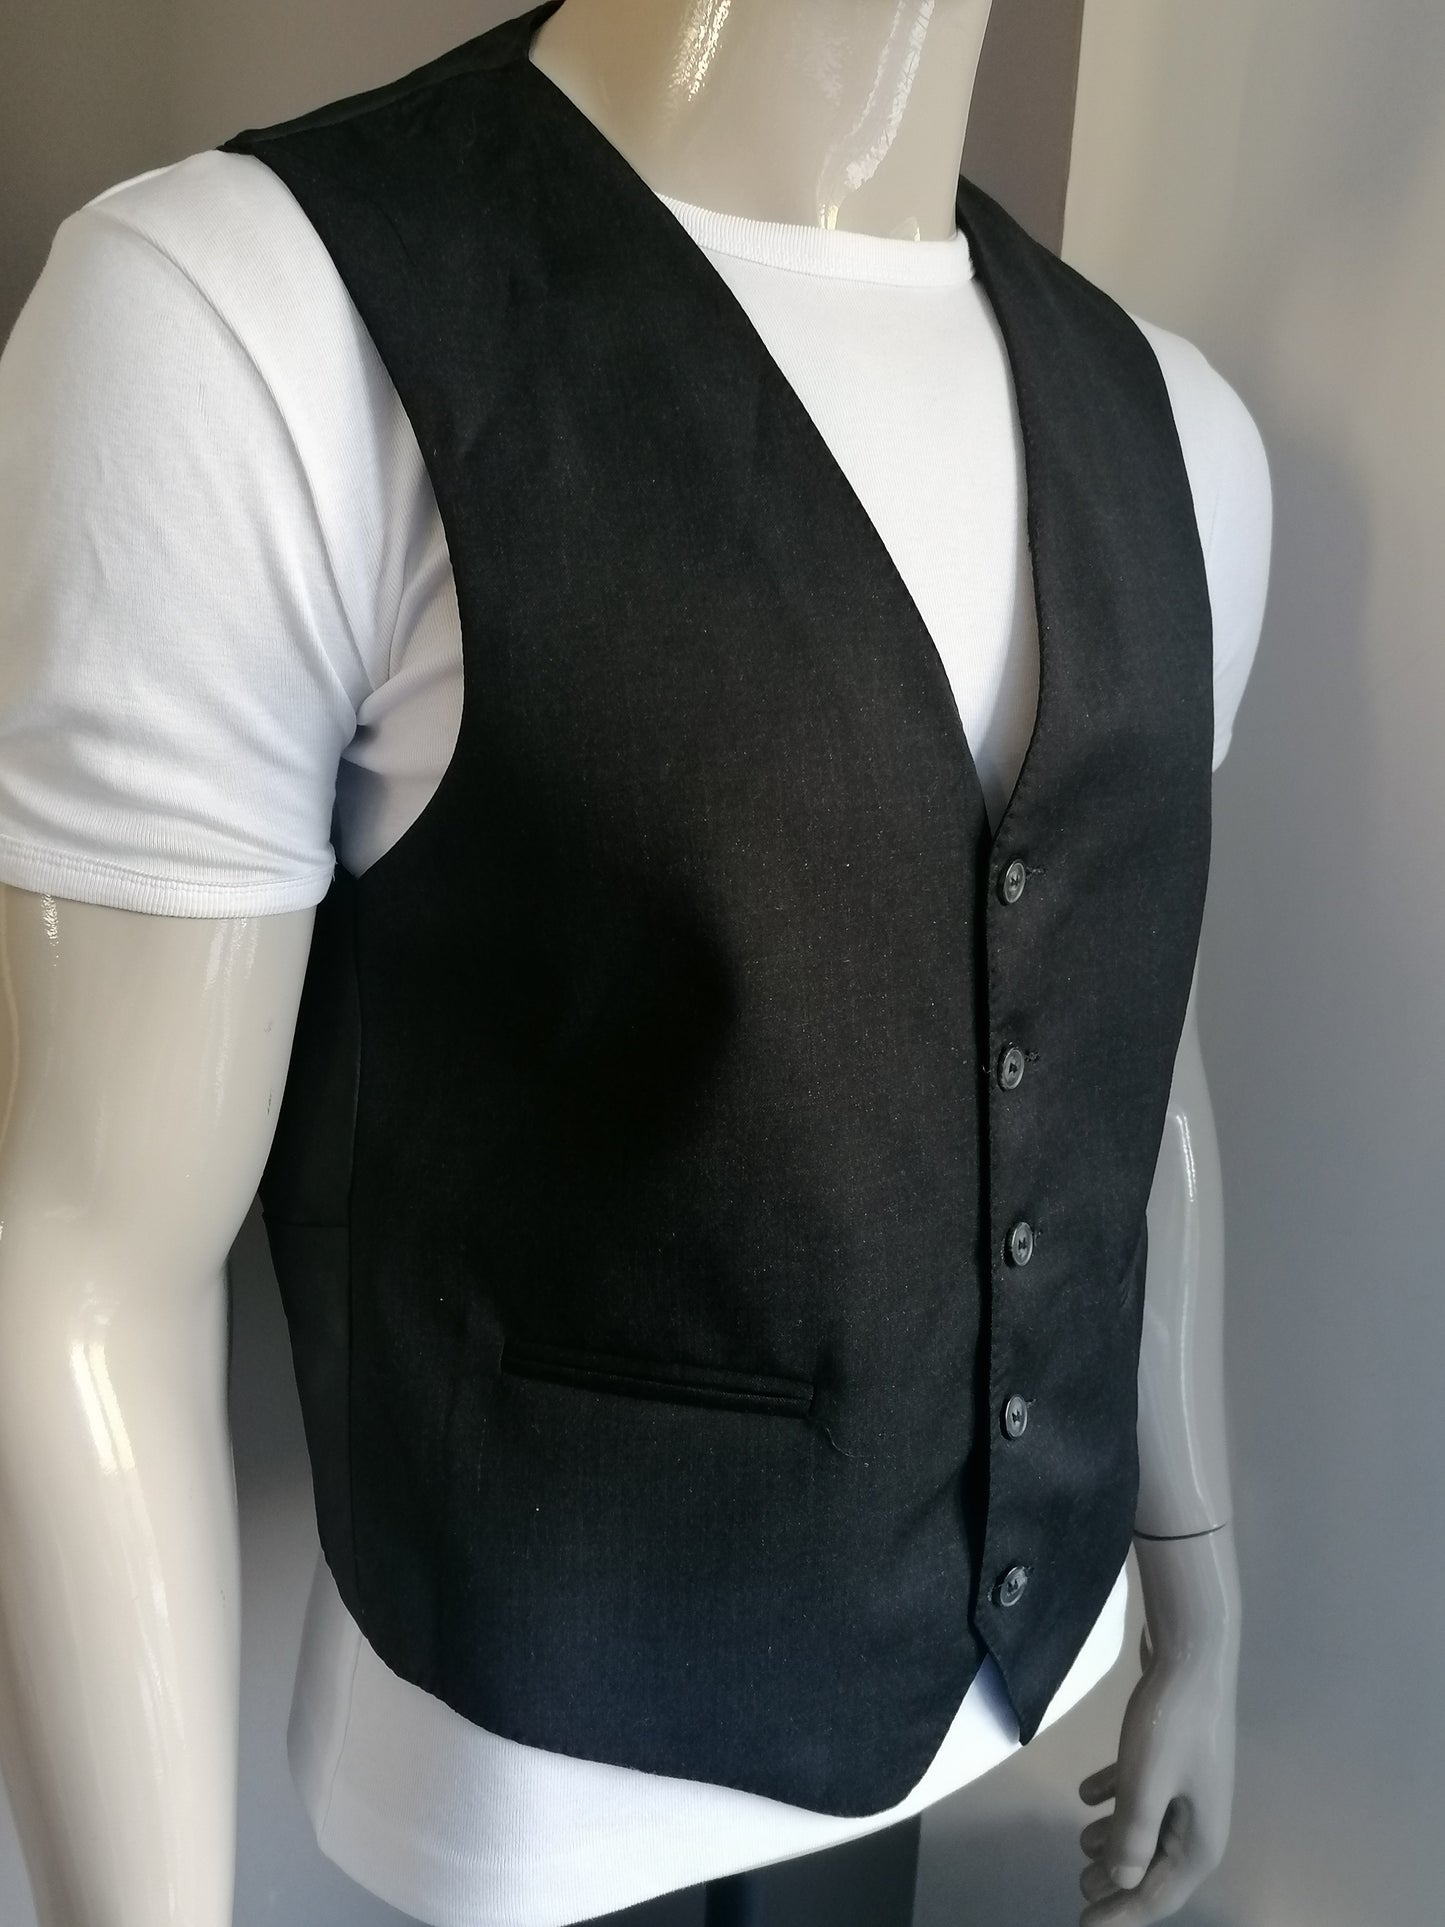 Hacoupian waistcoat. Dark gray colored. Size 50 / M.